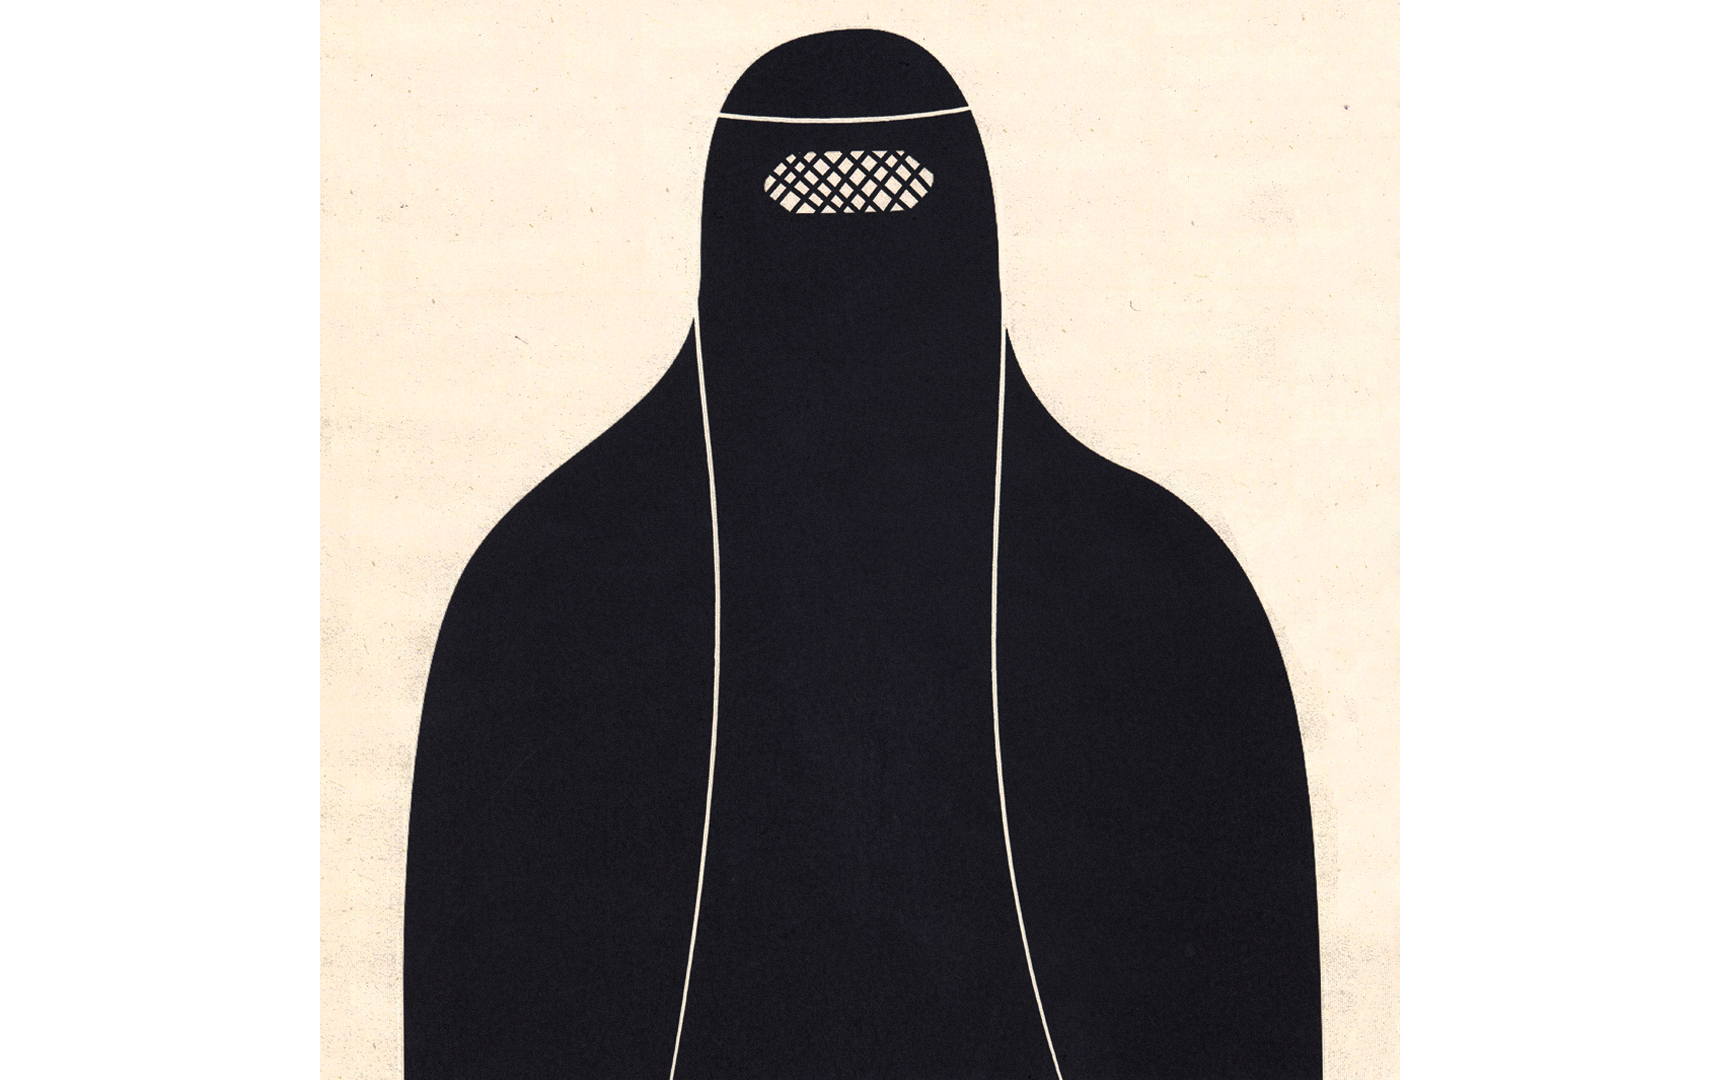 Burka hijab